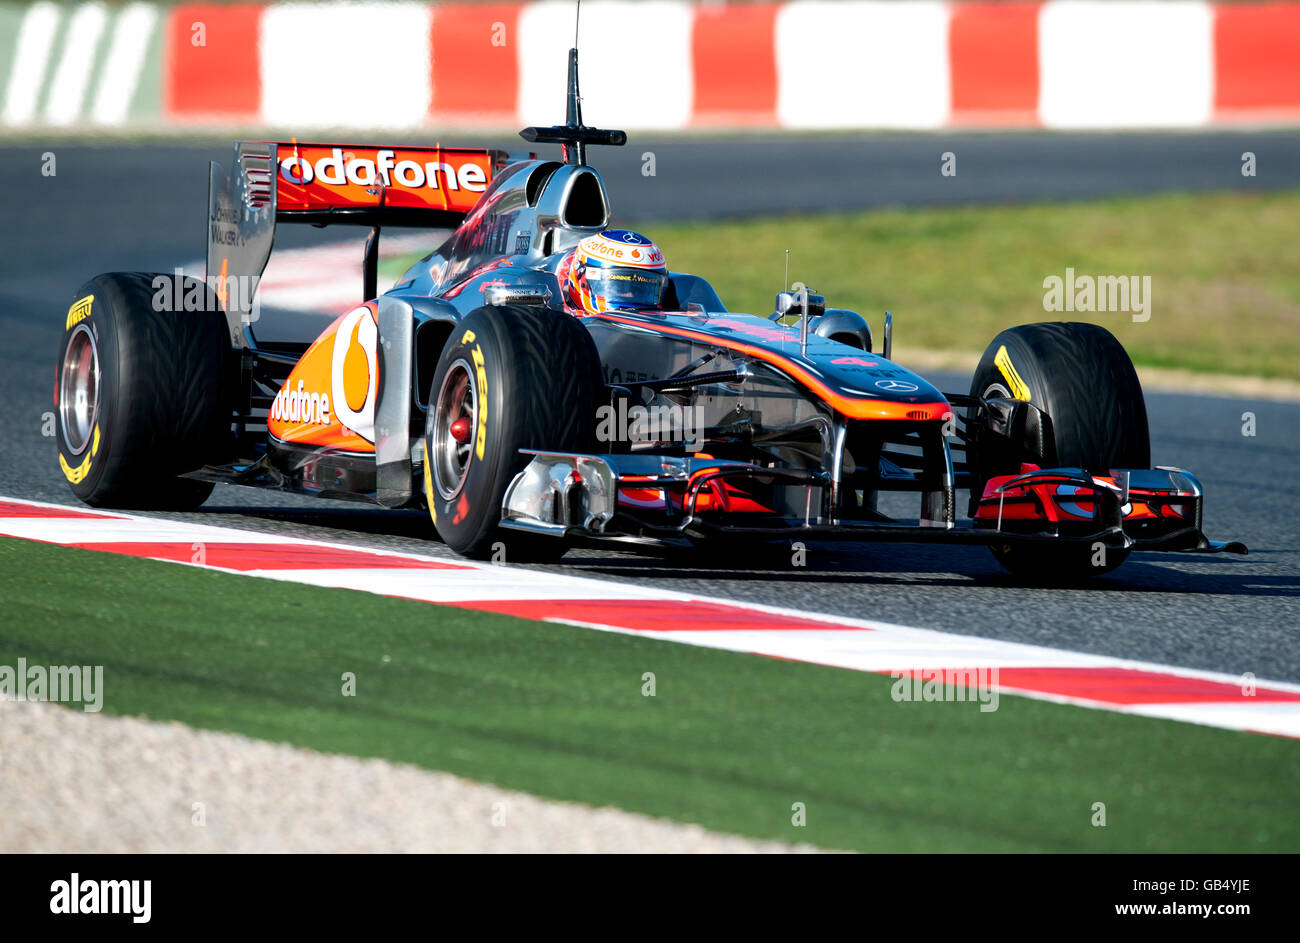 Jenson Button, Gran Bretaña, en su McLaren-Mercedes MP4-26 carrera de coches, deportes de motor, pruebas de Fórmula 1 en el circuito de Catalunya Foto de stock